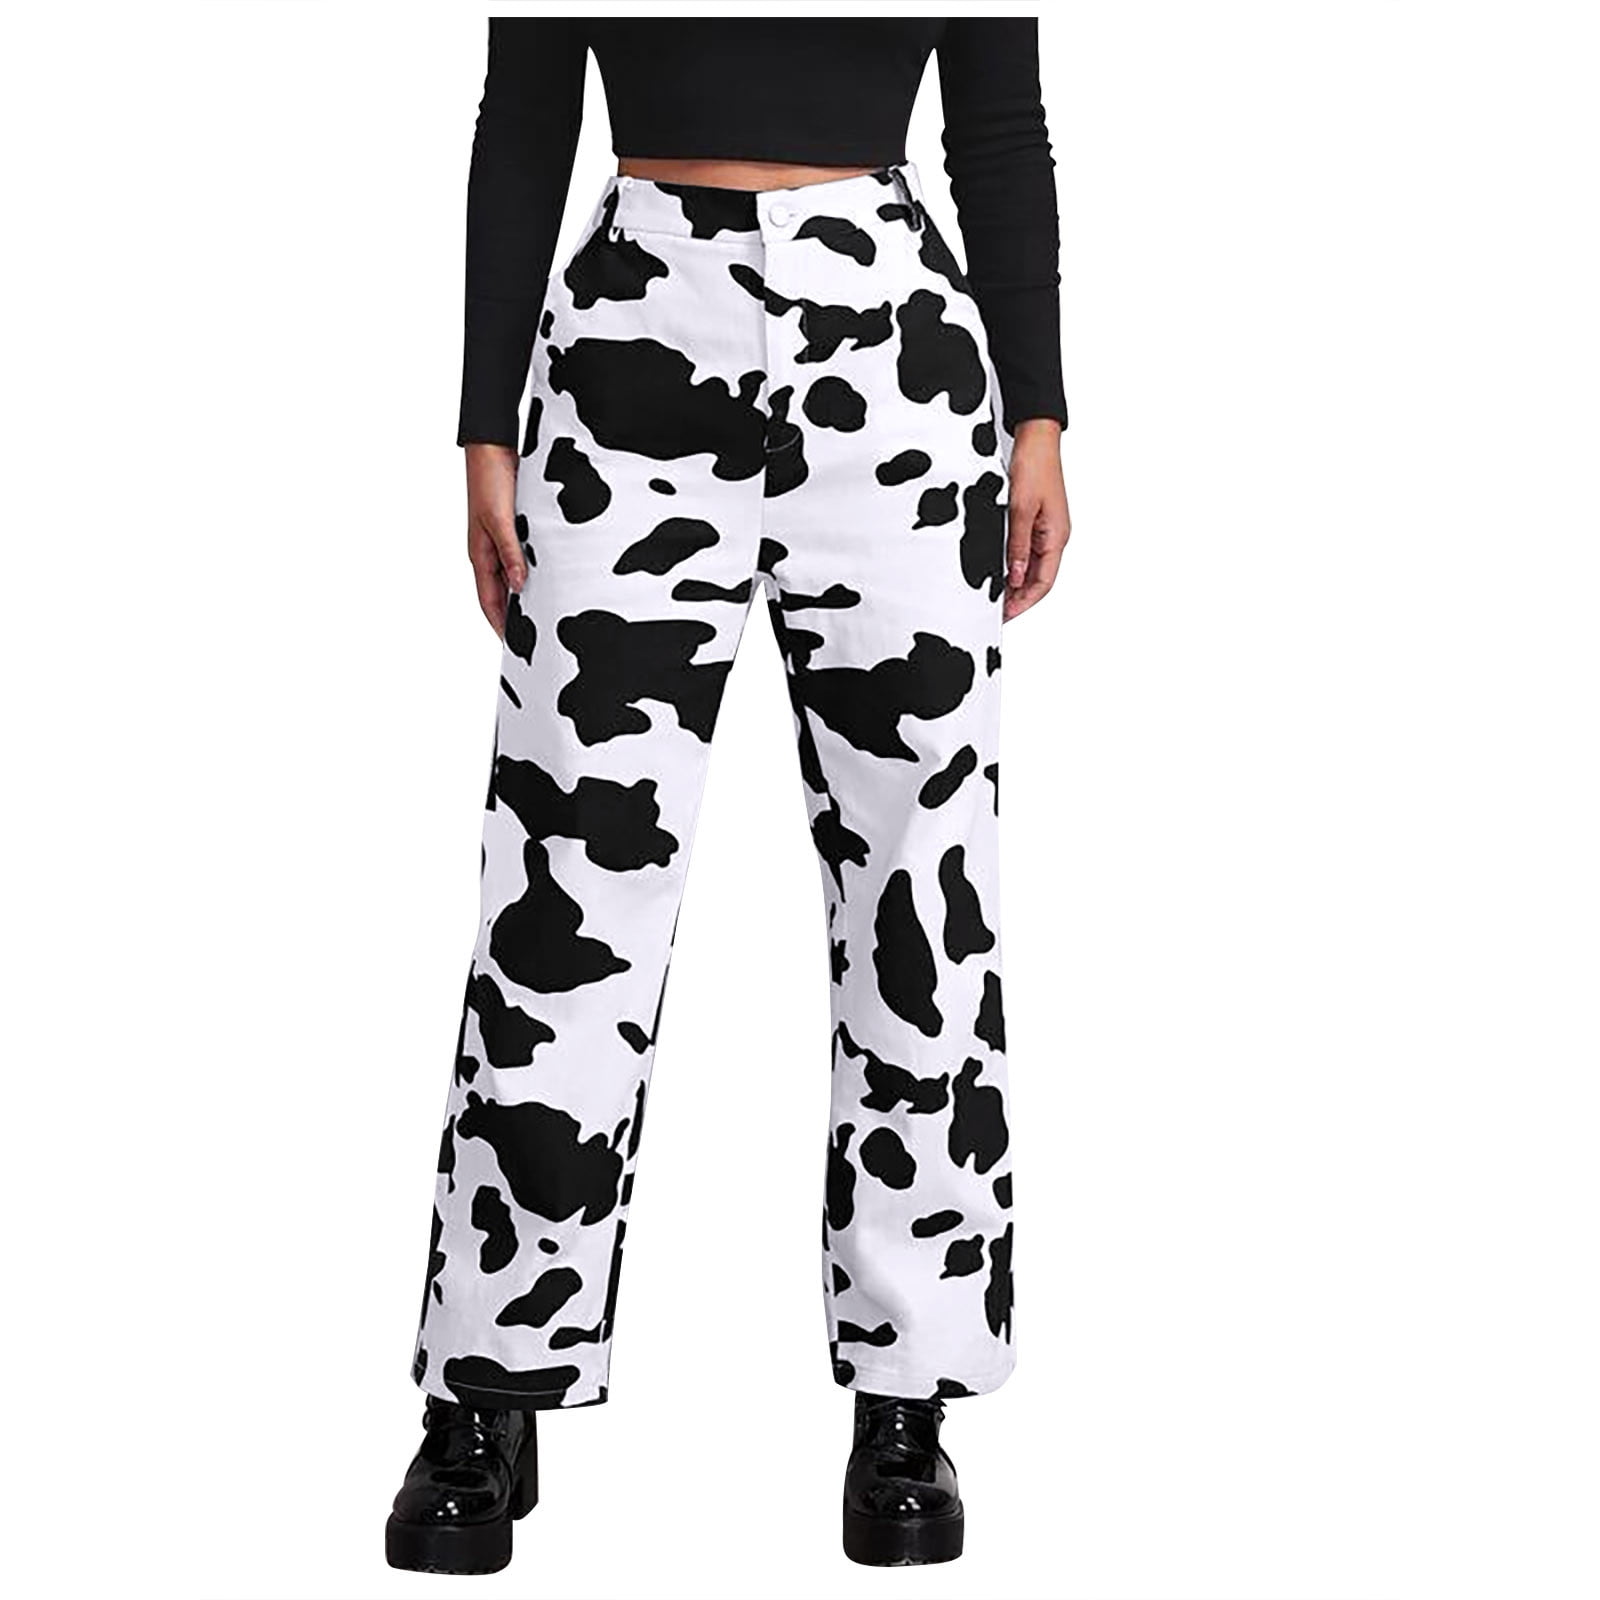 Ecqkame Women's Cow Print High Waist Wide Leg Jeans Clearance Fashion ...